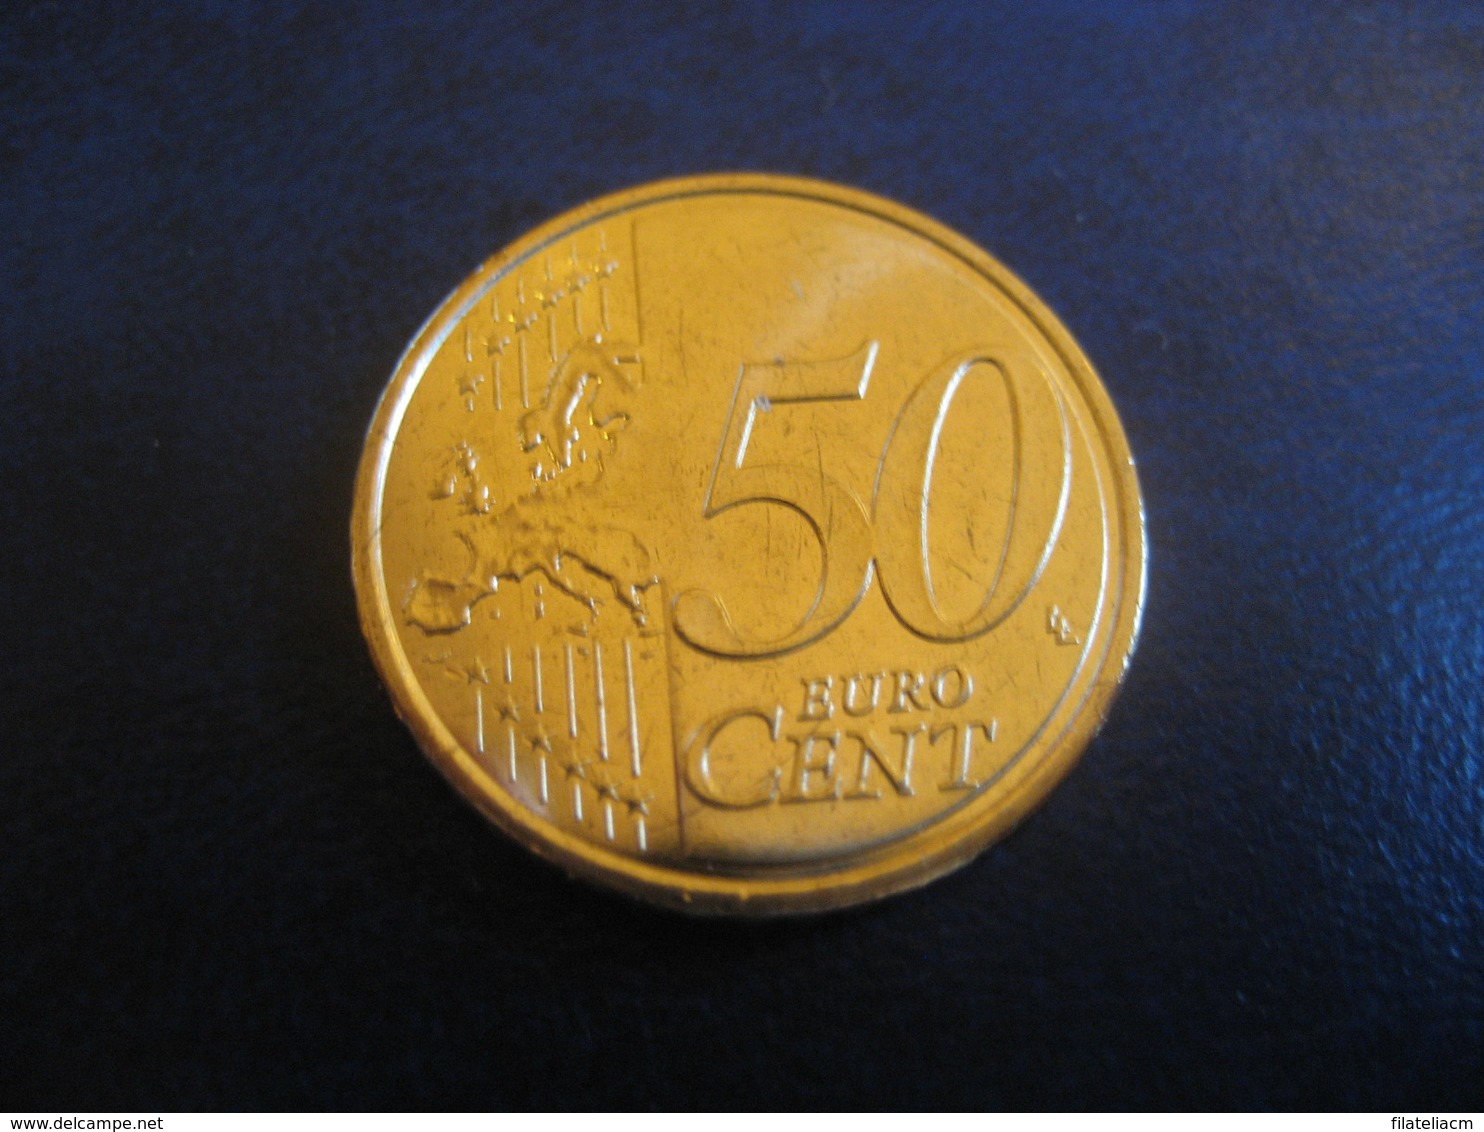 50 Cents EUR 2018 ANDORRA Good Condition Euro Coin - Andorre